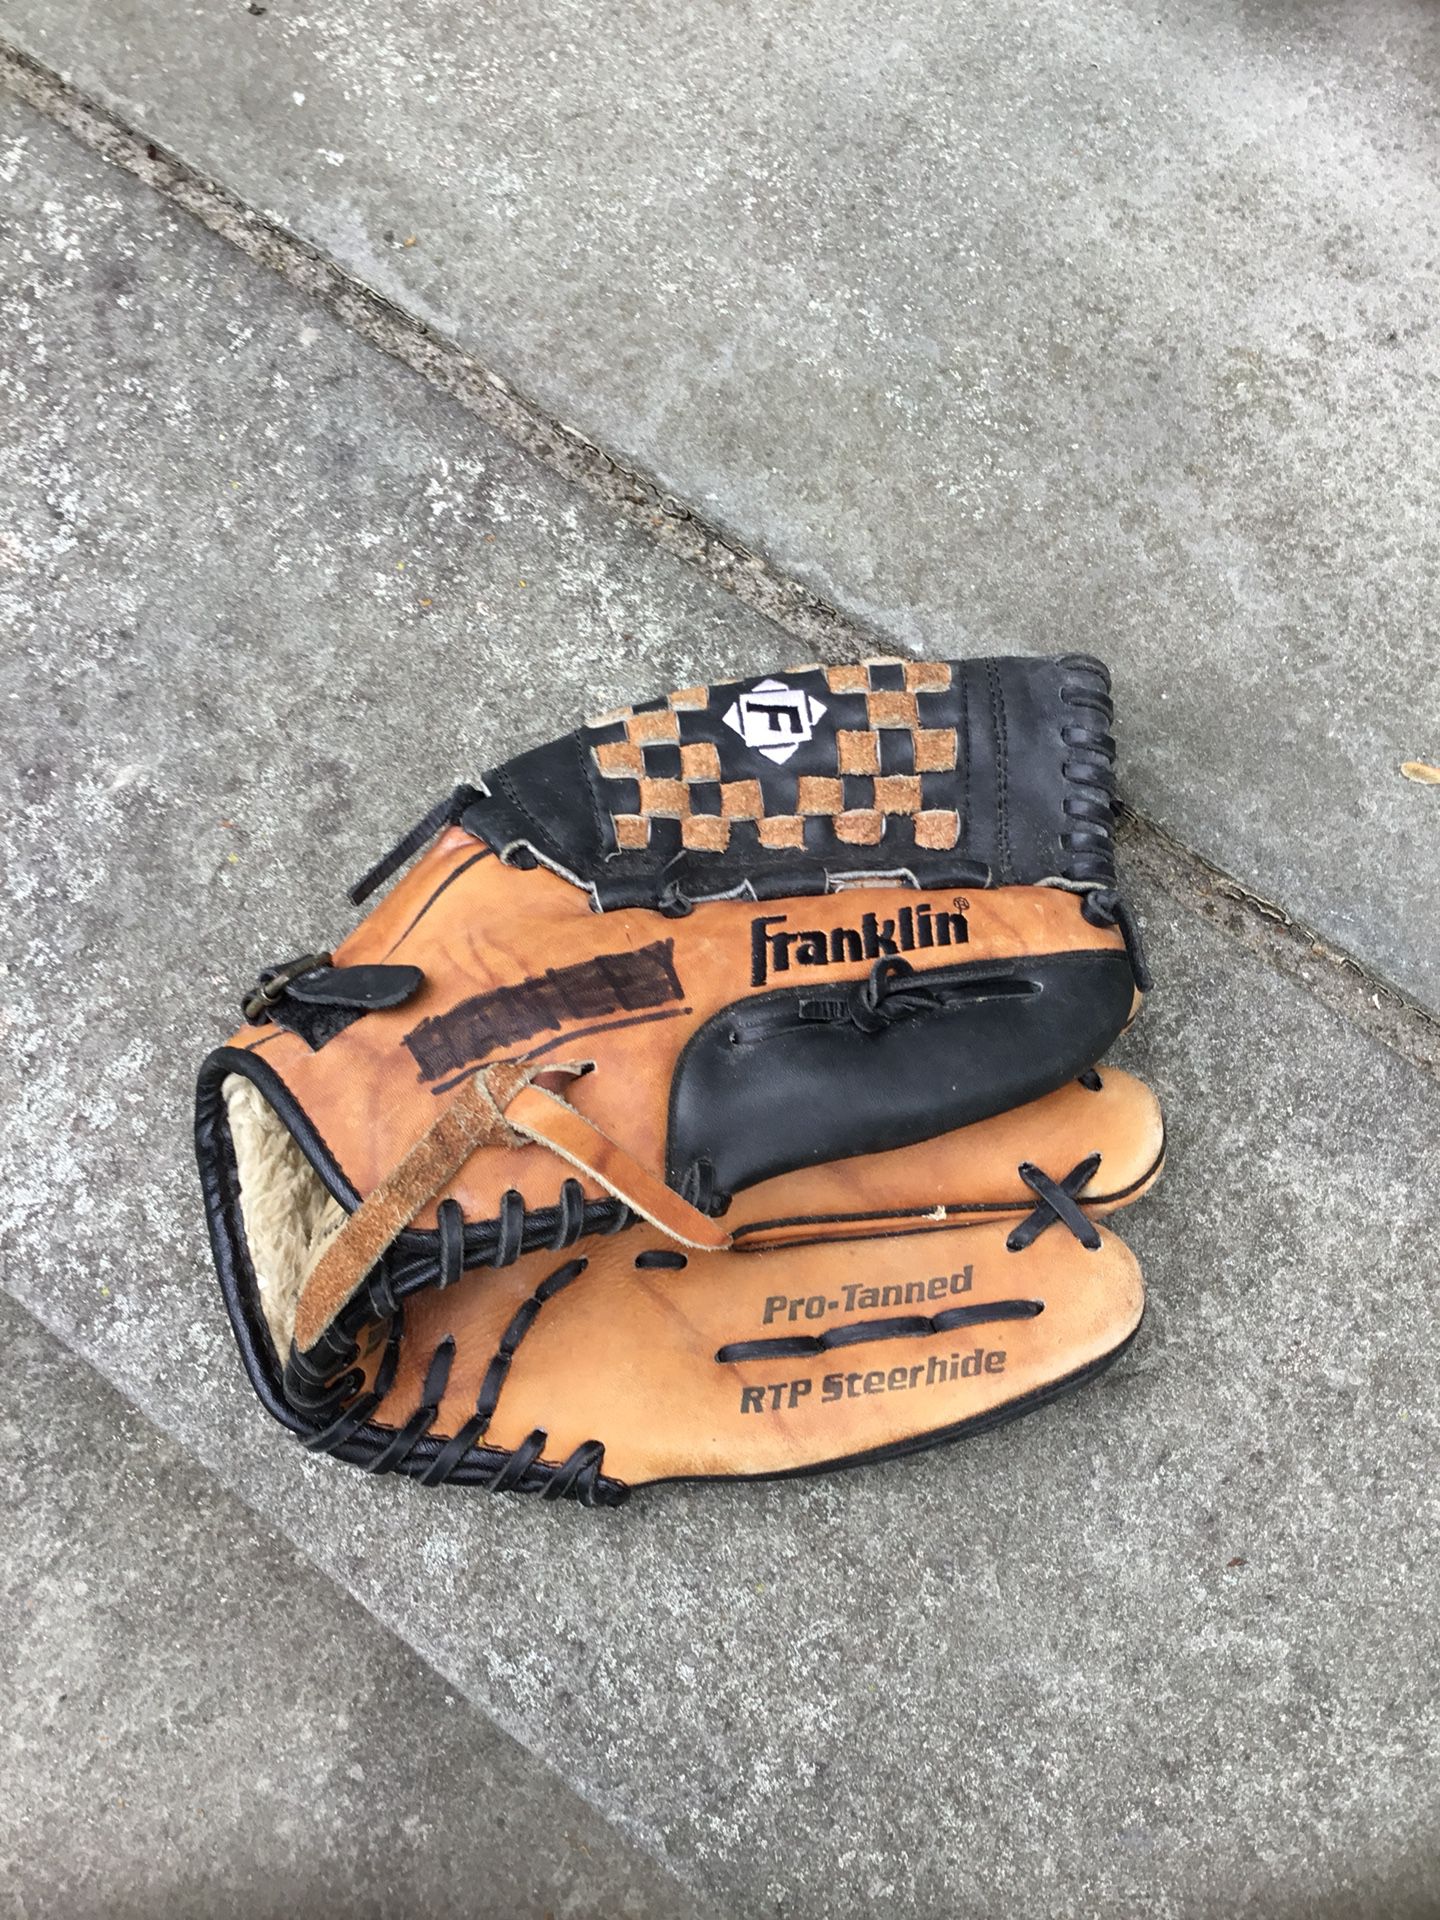 12 1/2 inch baseball glove Franklin